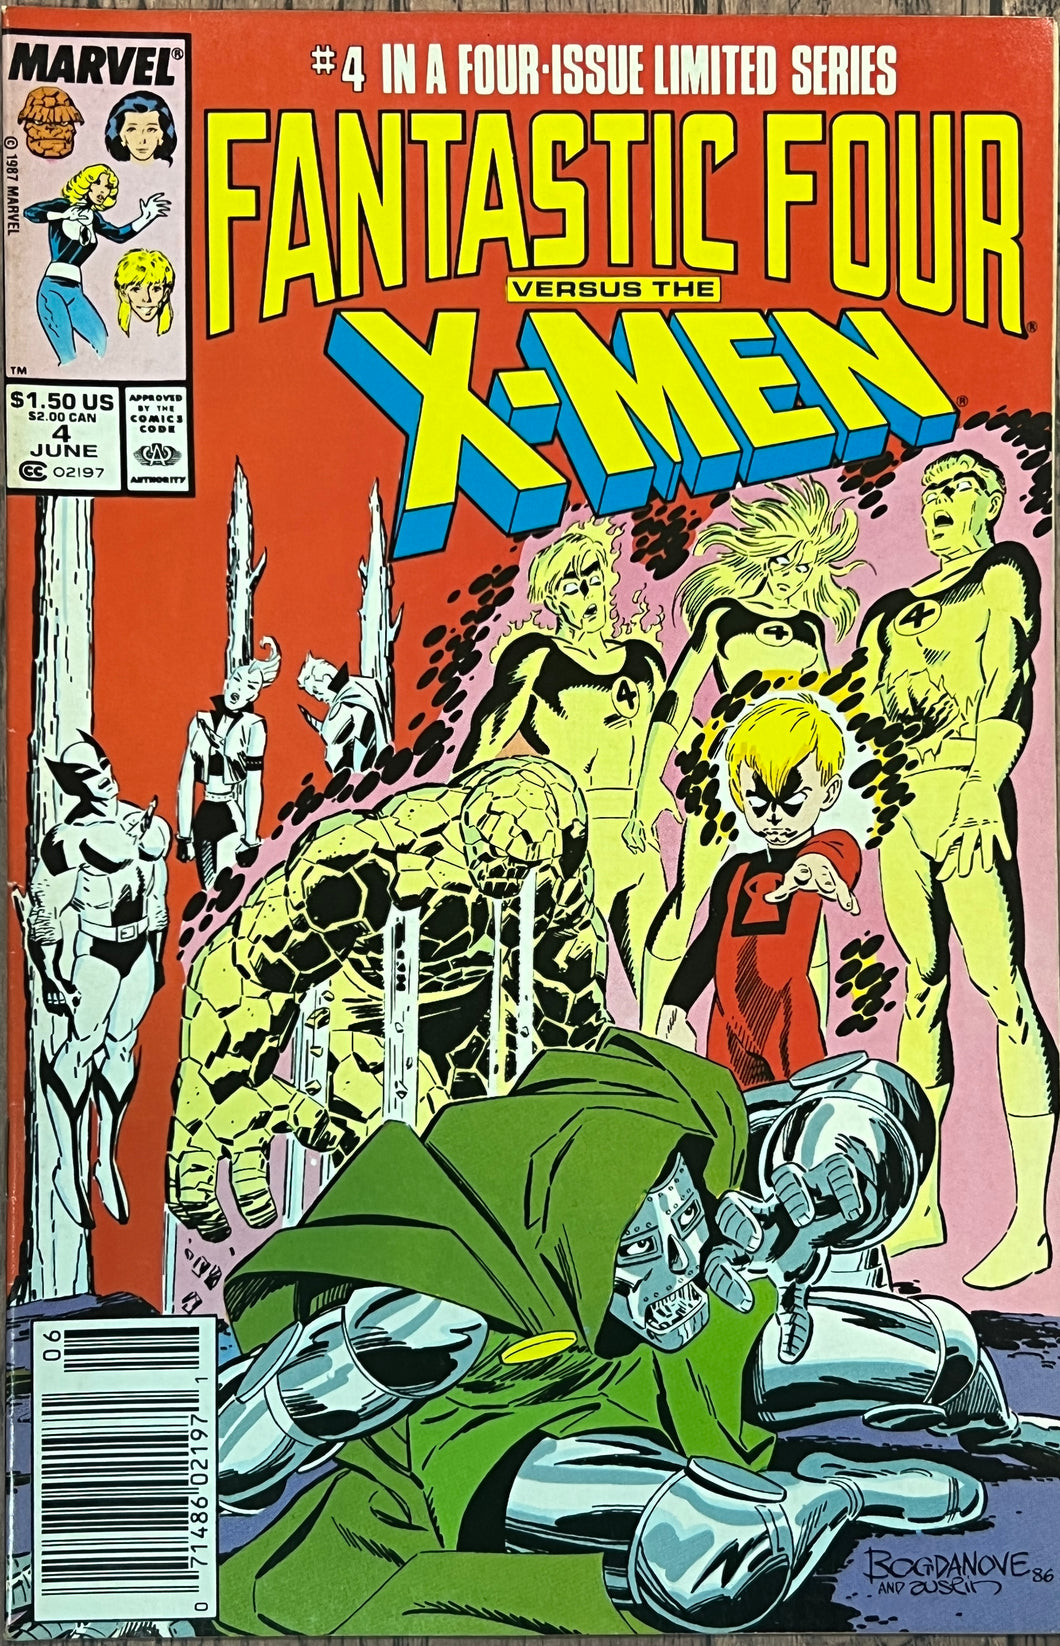 Fantastic Four versus the X-Men #4 (1987)